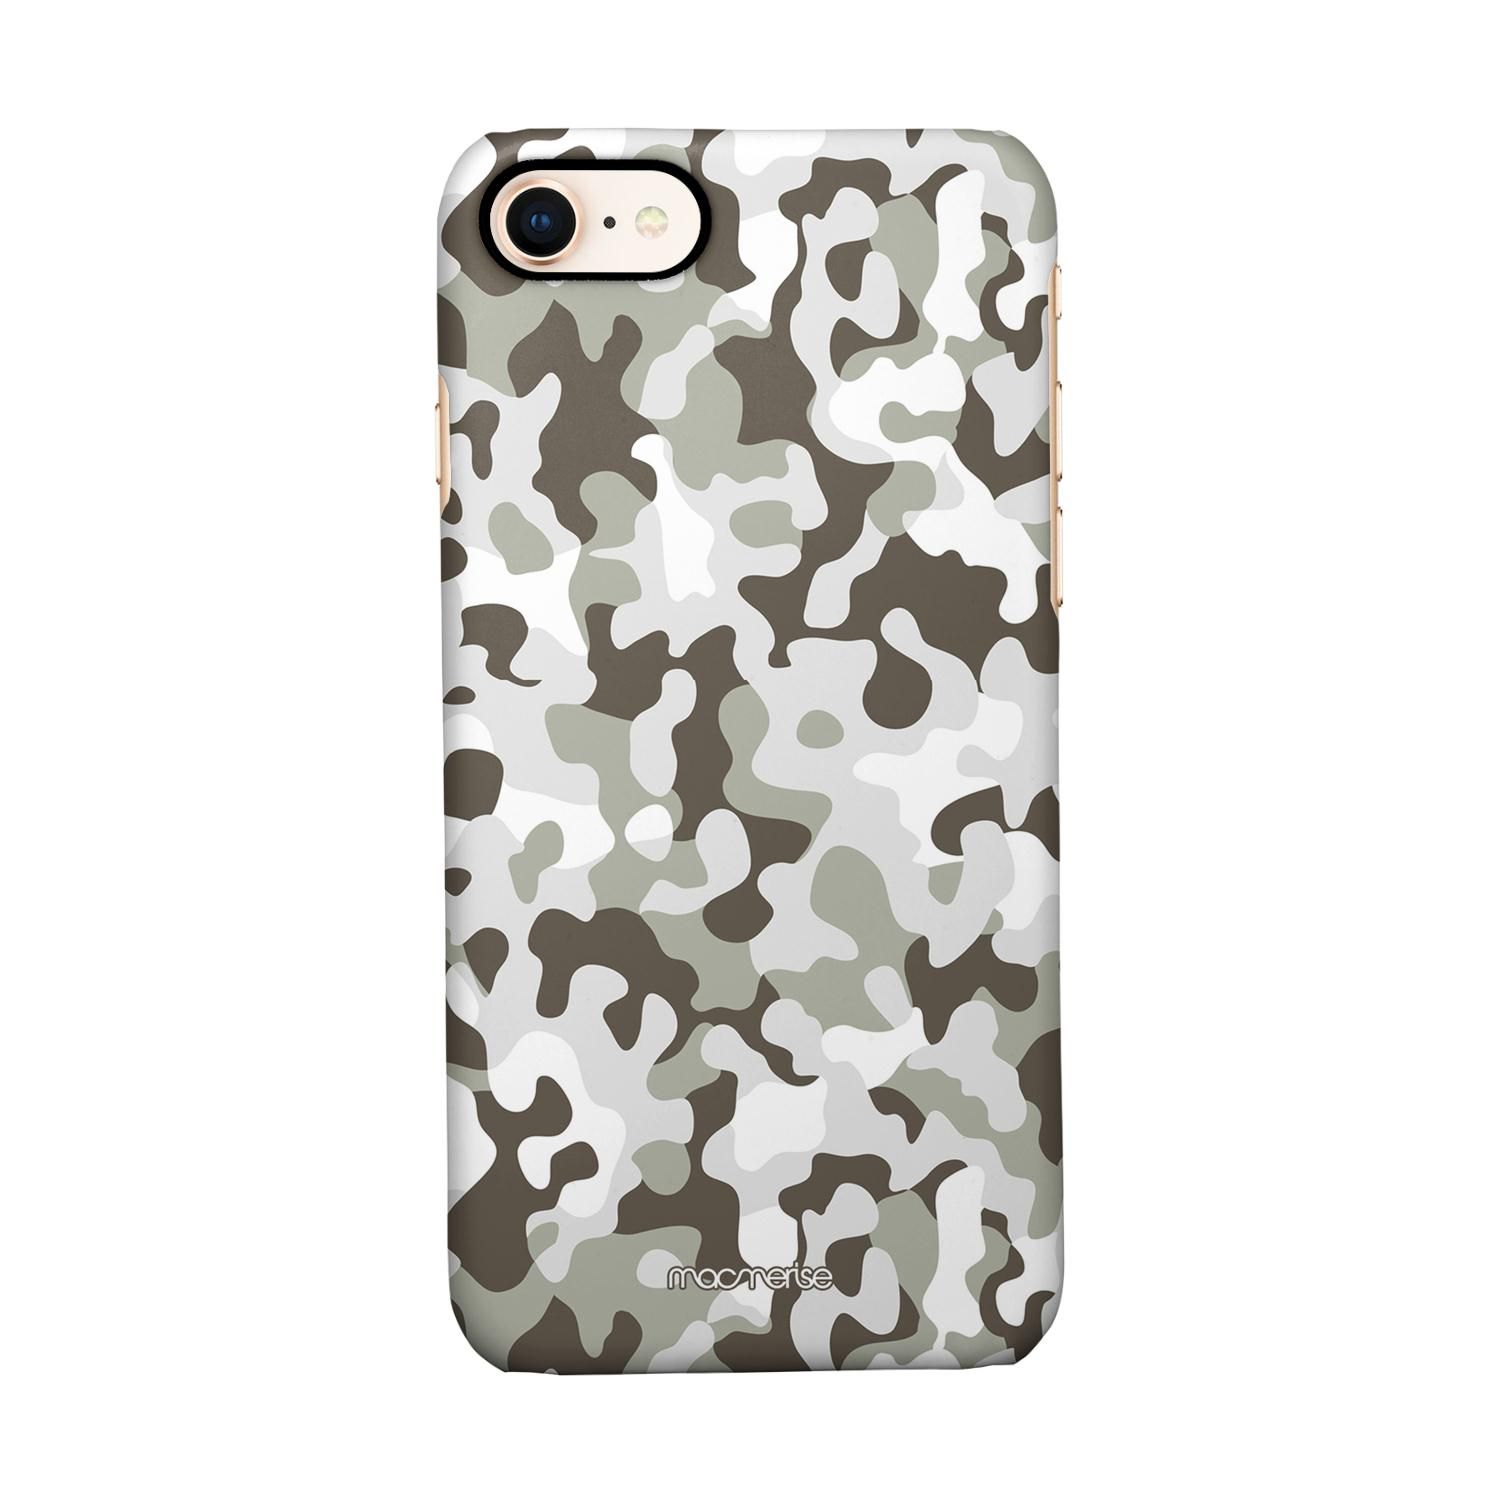 Buy Camo Grey - Sleek Phone Case for iPhone 7 Online